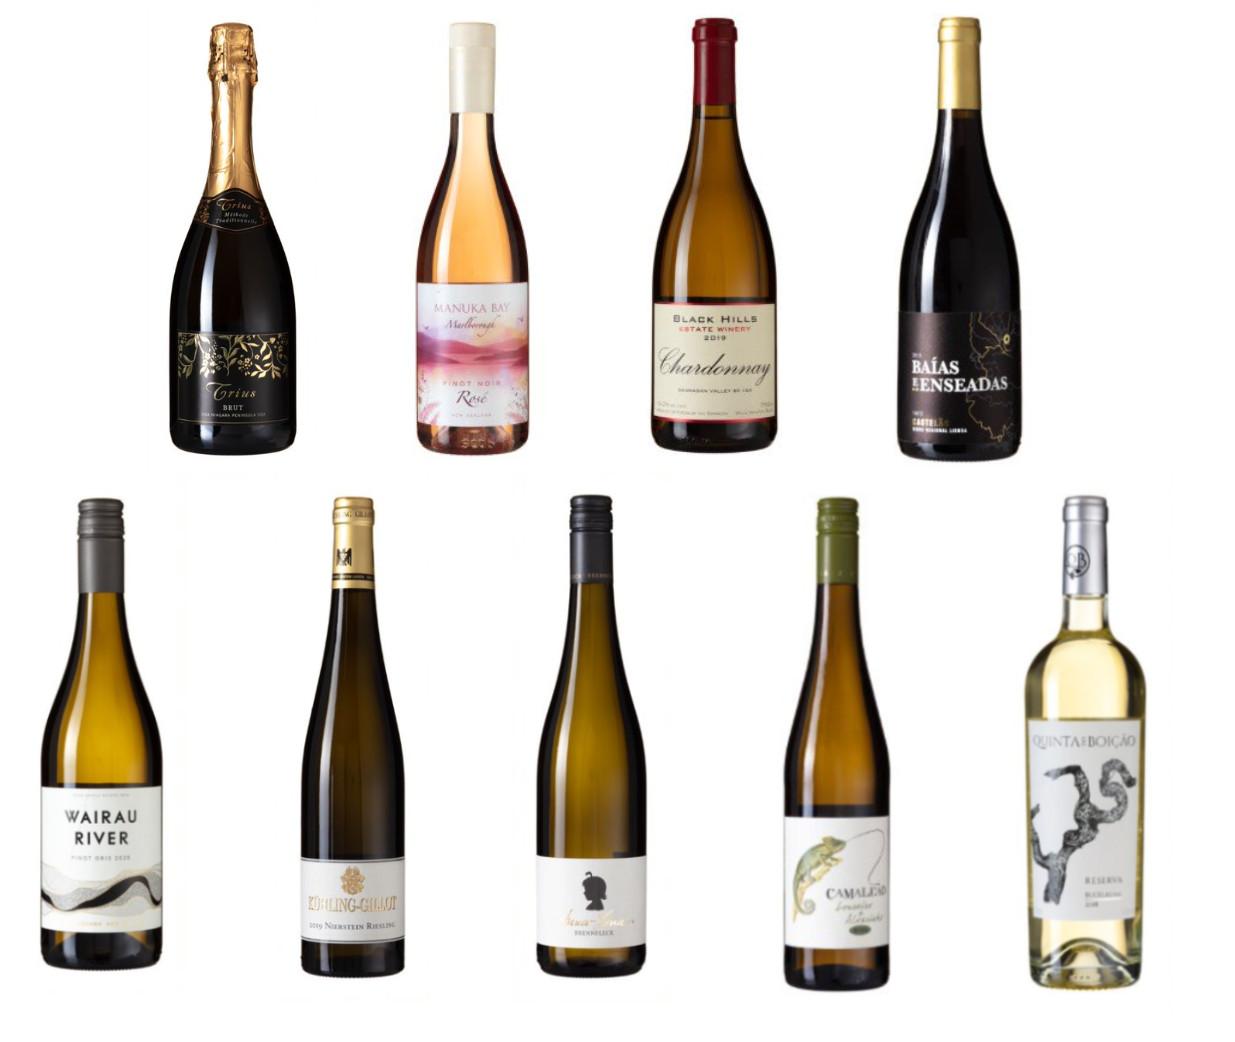 BLANDET DROPS: Det er varierende kvalitet på vinene i årets andre vinslipp på Vinmonopolet, ifølge vår anmelder.